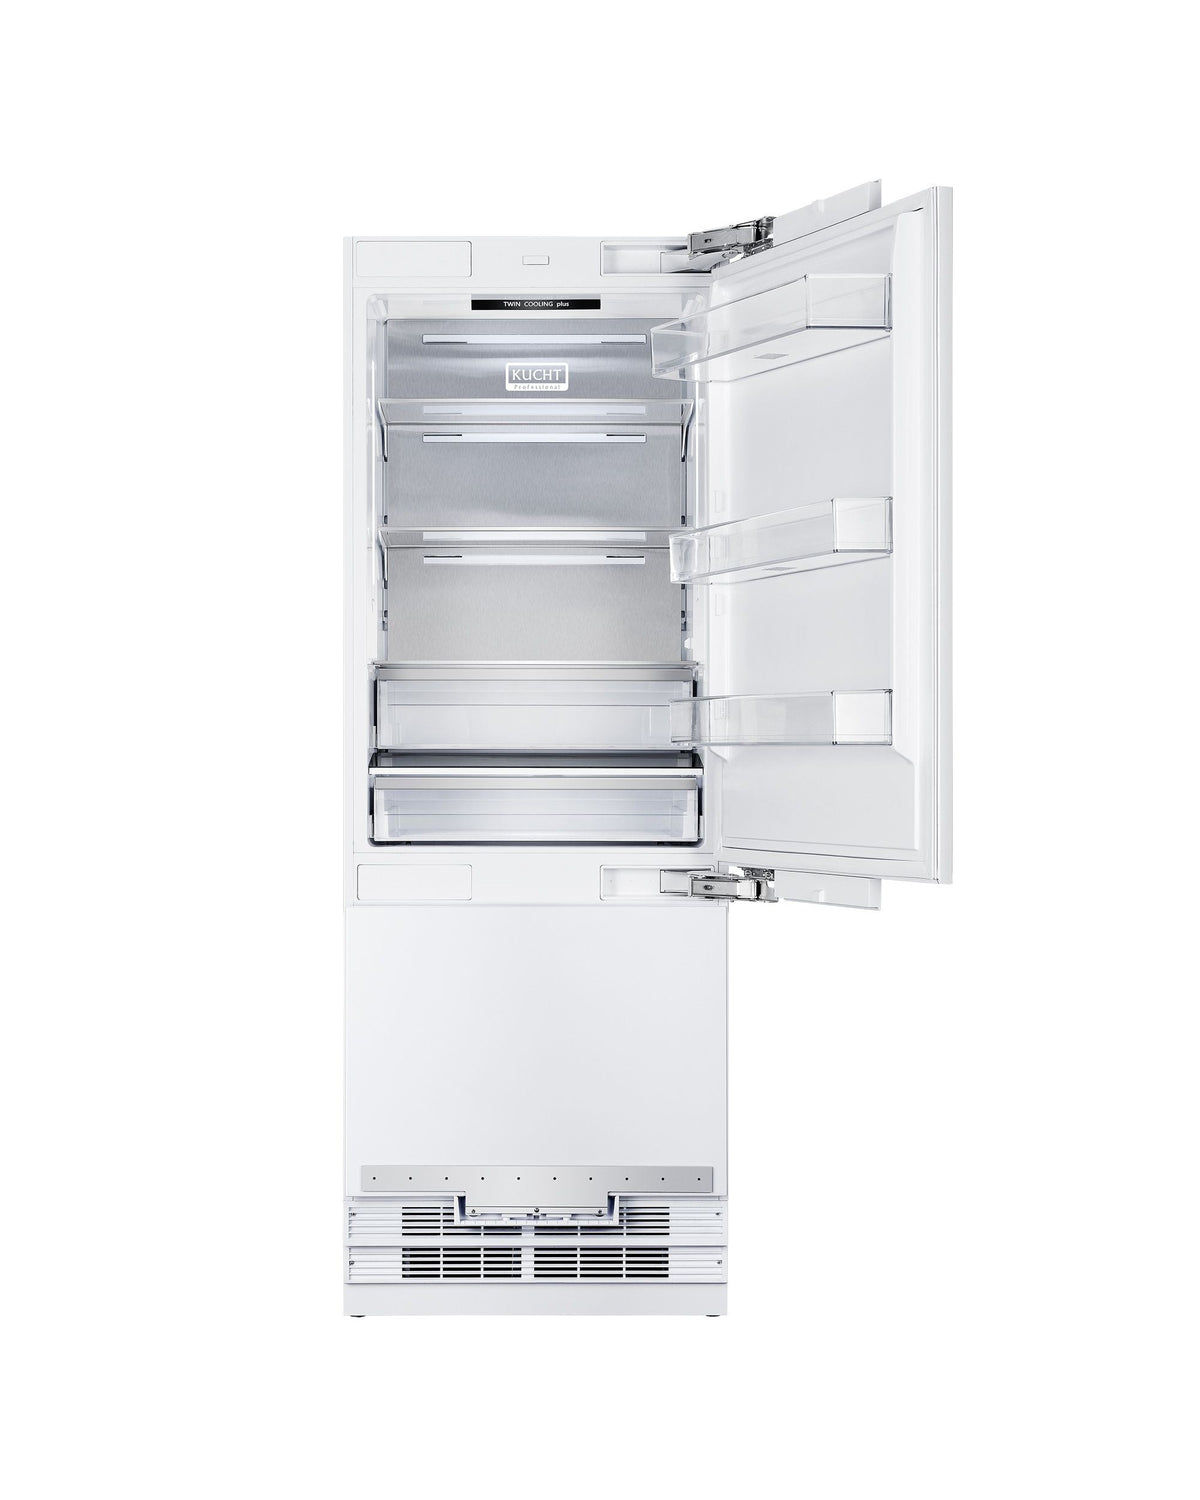 KUCHT KR300SD 30” Built-In, Counter Depth, Panel Ready, Single Door Refrigerator